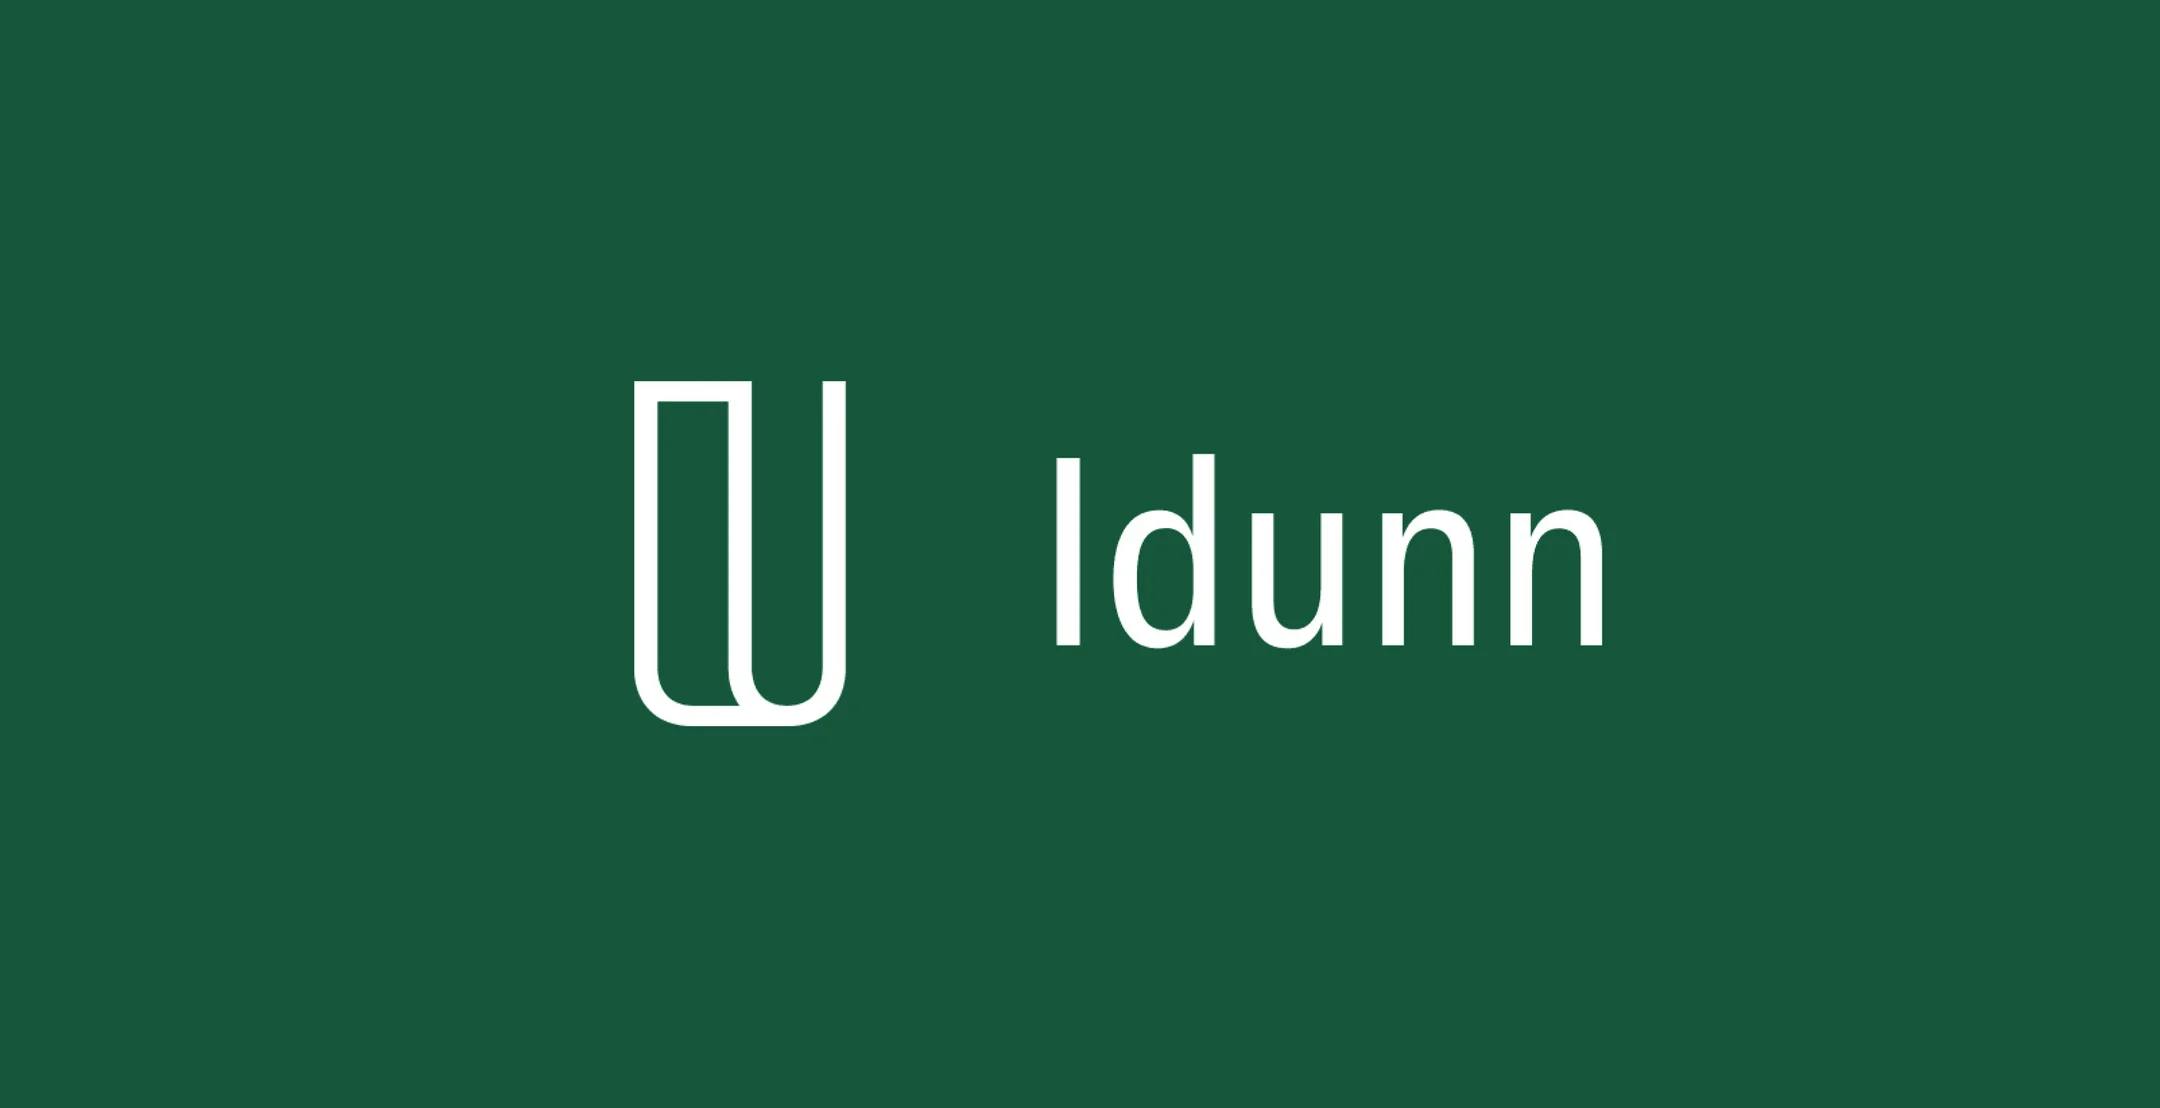 Idunn-logo